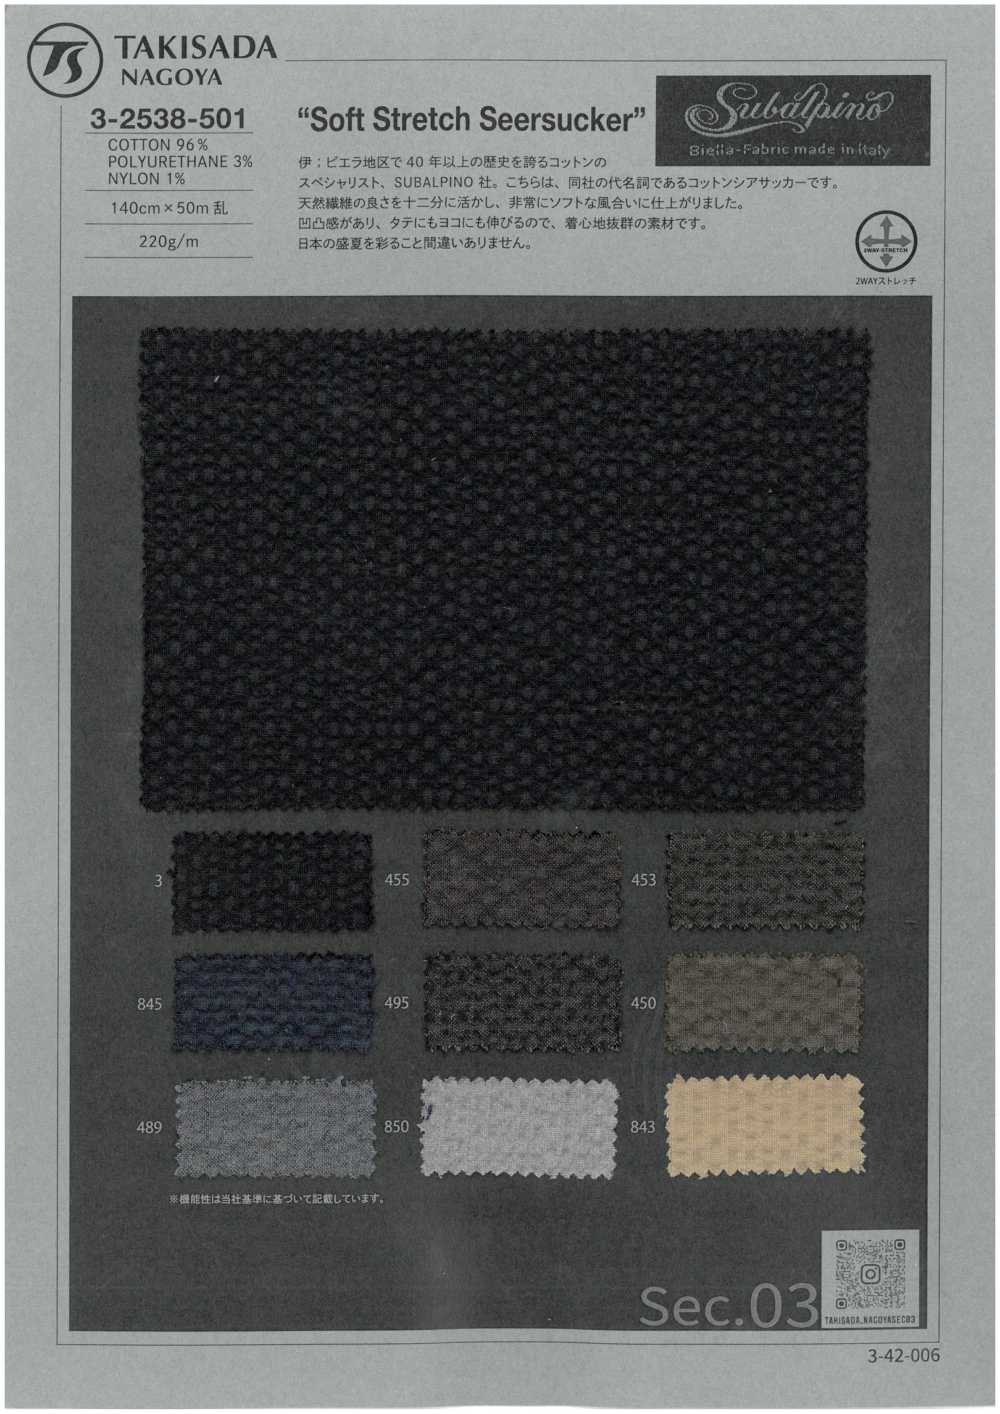 3-2538-501 SUBALPINO Seersucker Elástico Suave Sin Patrón[Fabrica Textil] Takisada Nagoya